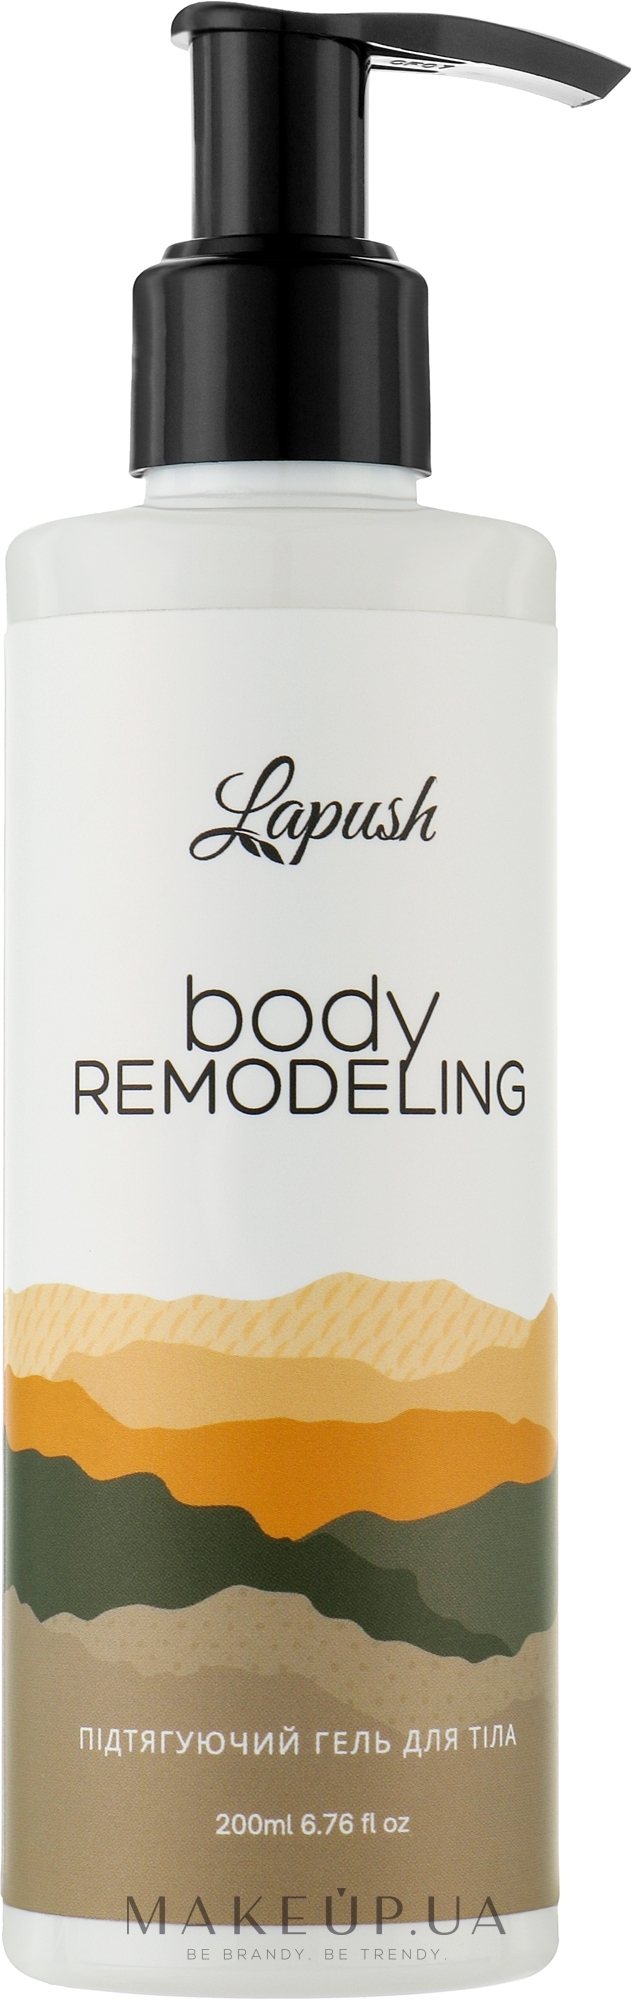 Підтягуючий гель для тіла - Lapush Body Remodeling — фото 200ml